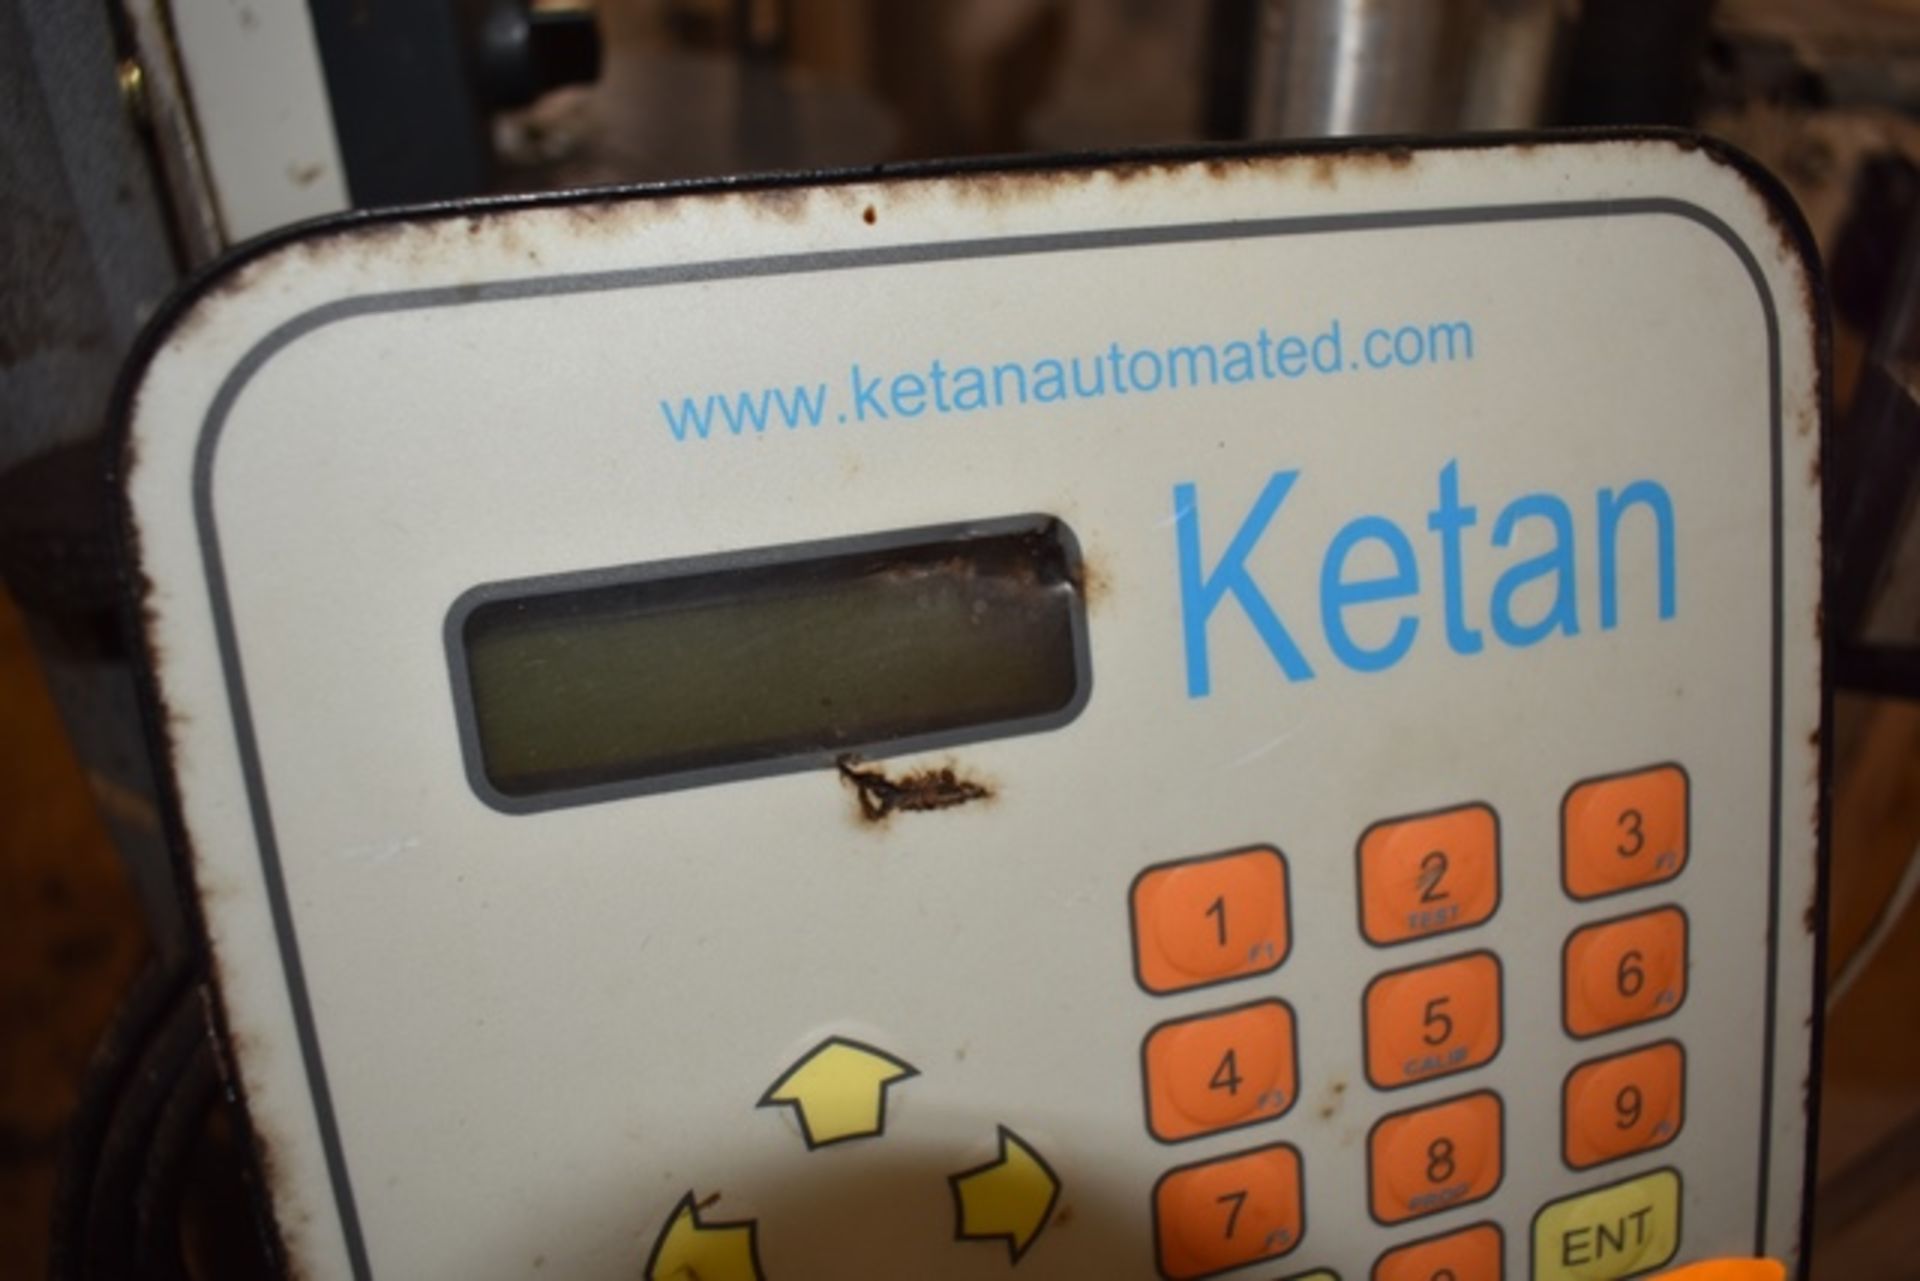 Ketan pressure sensitive labeler, model K50, on adjustable mobile stand (equpment # 3) - Image 2 of 2